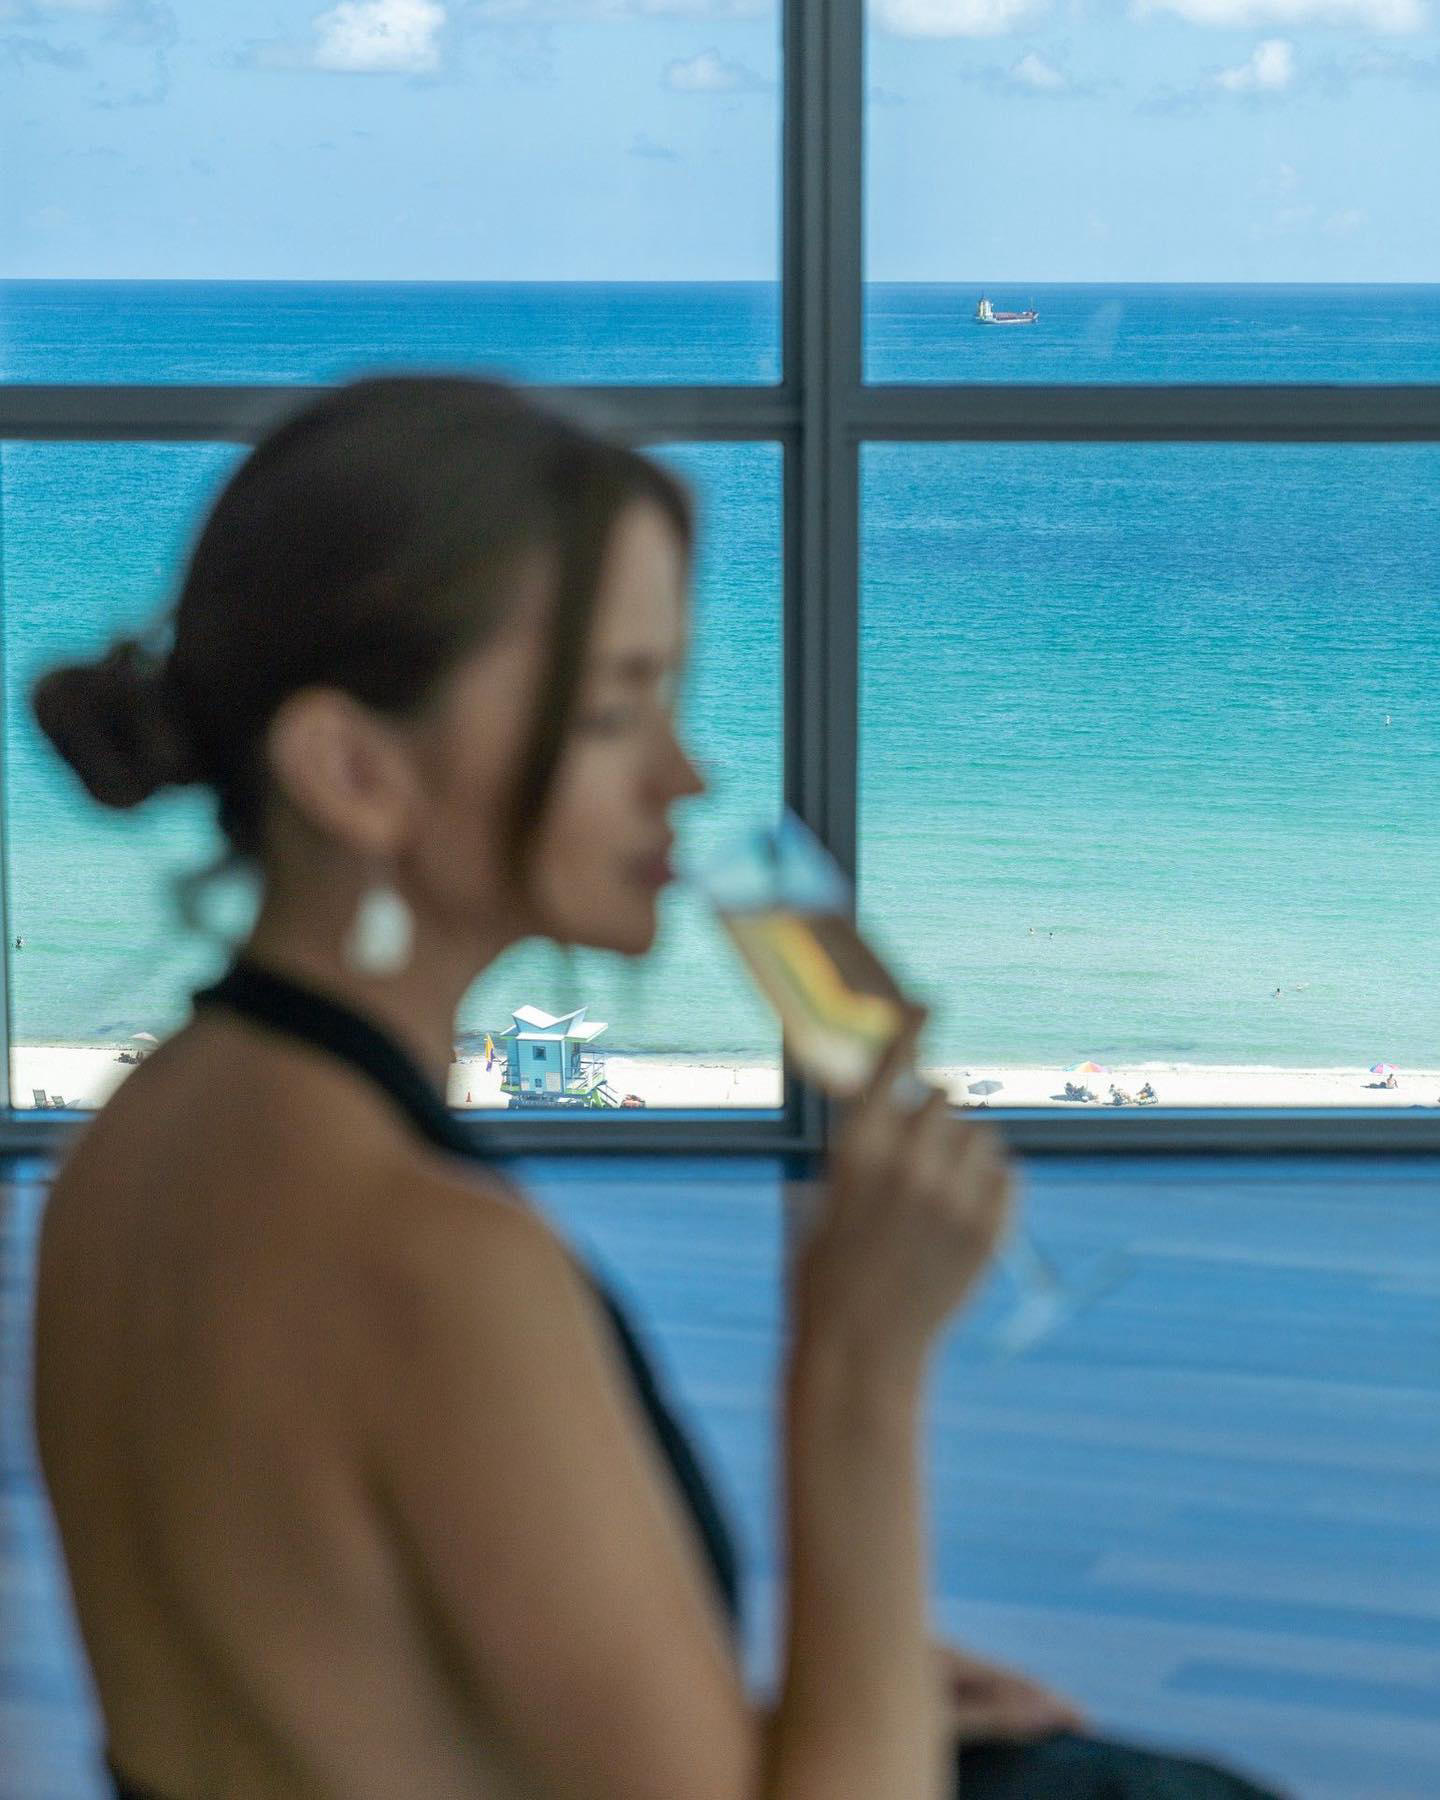 The Setai, Miami Beach - Discreet luxury at its finest